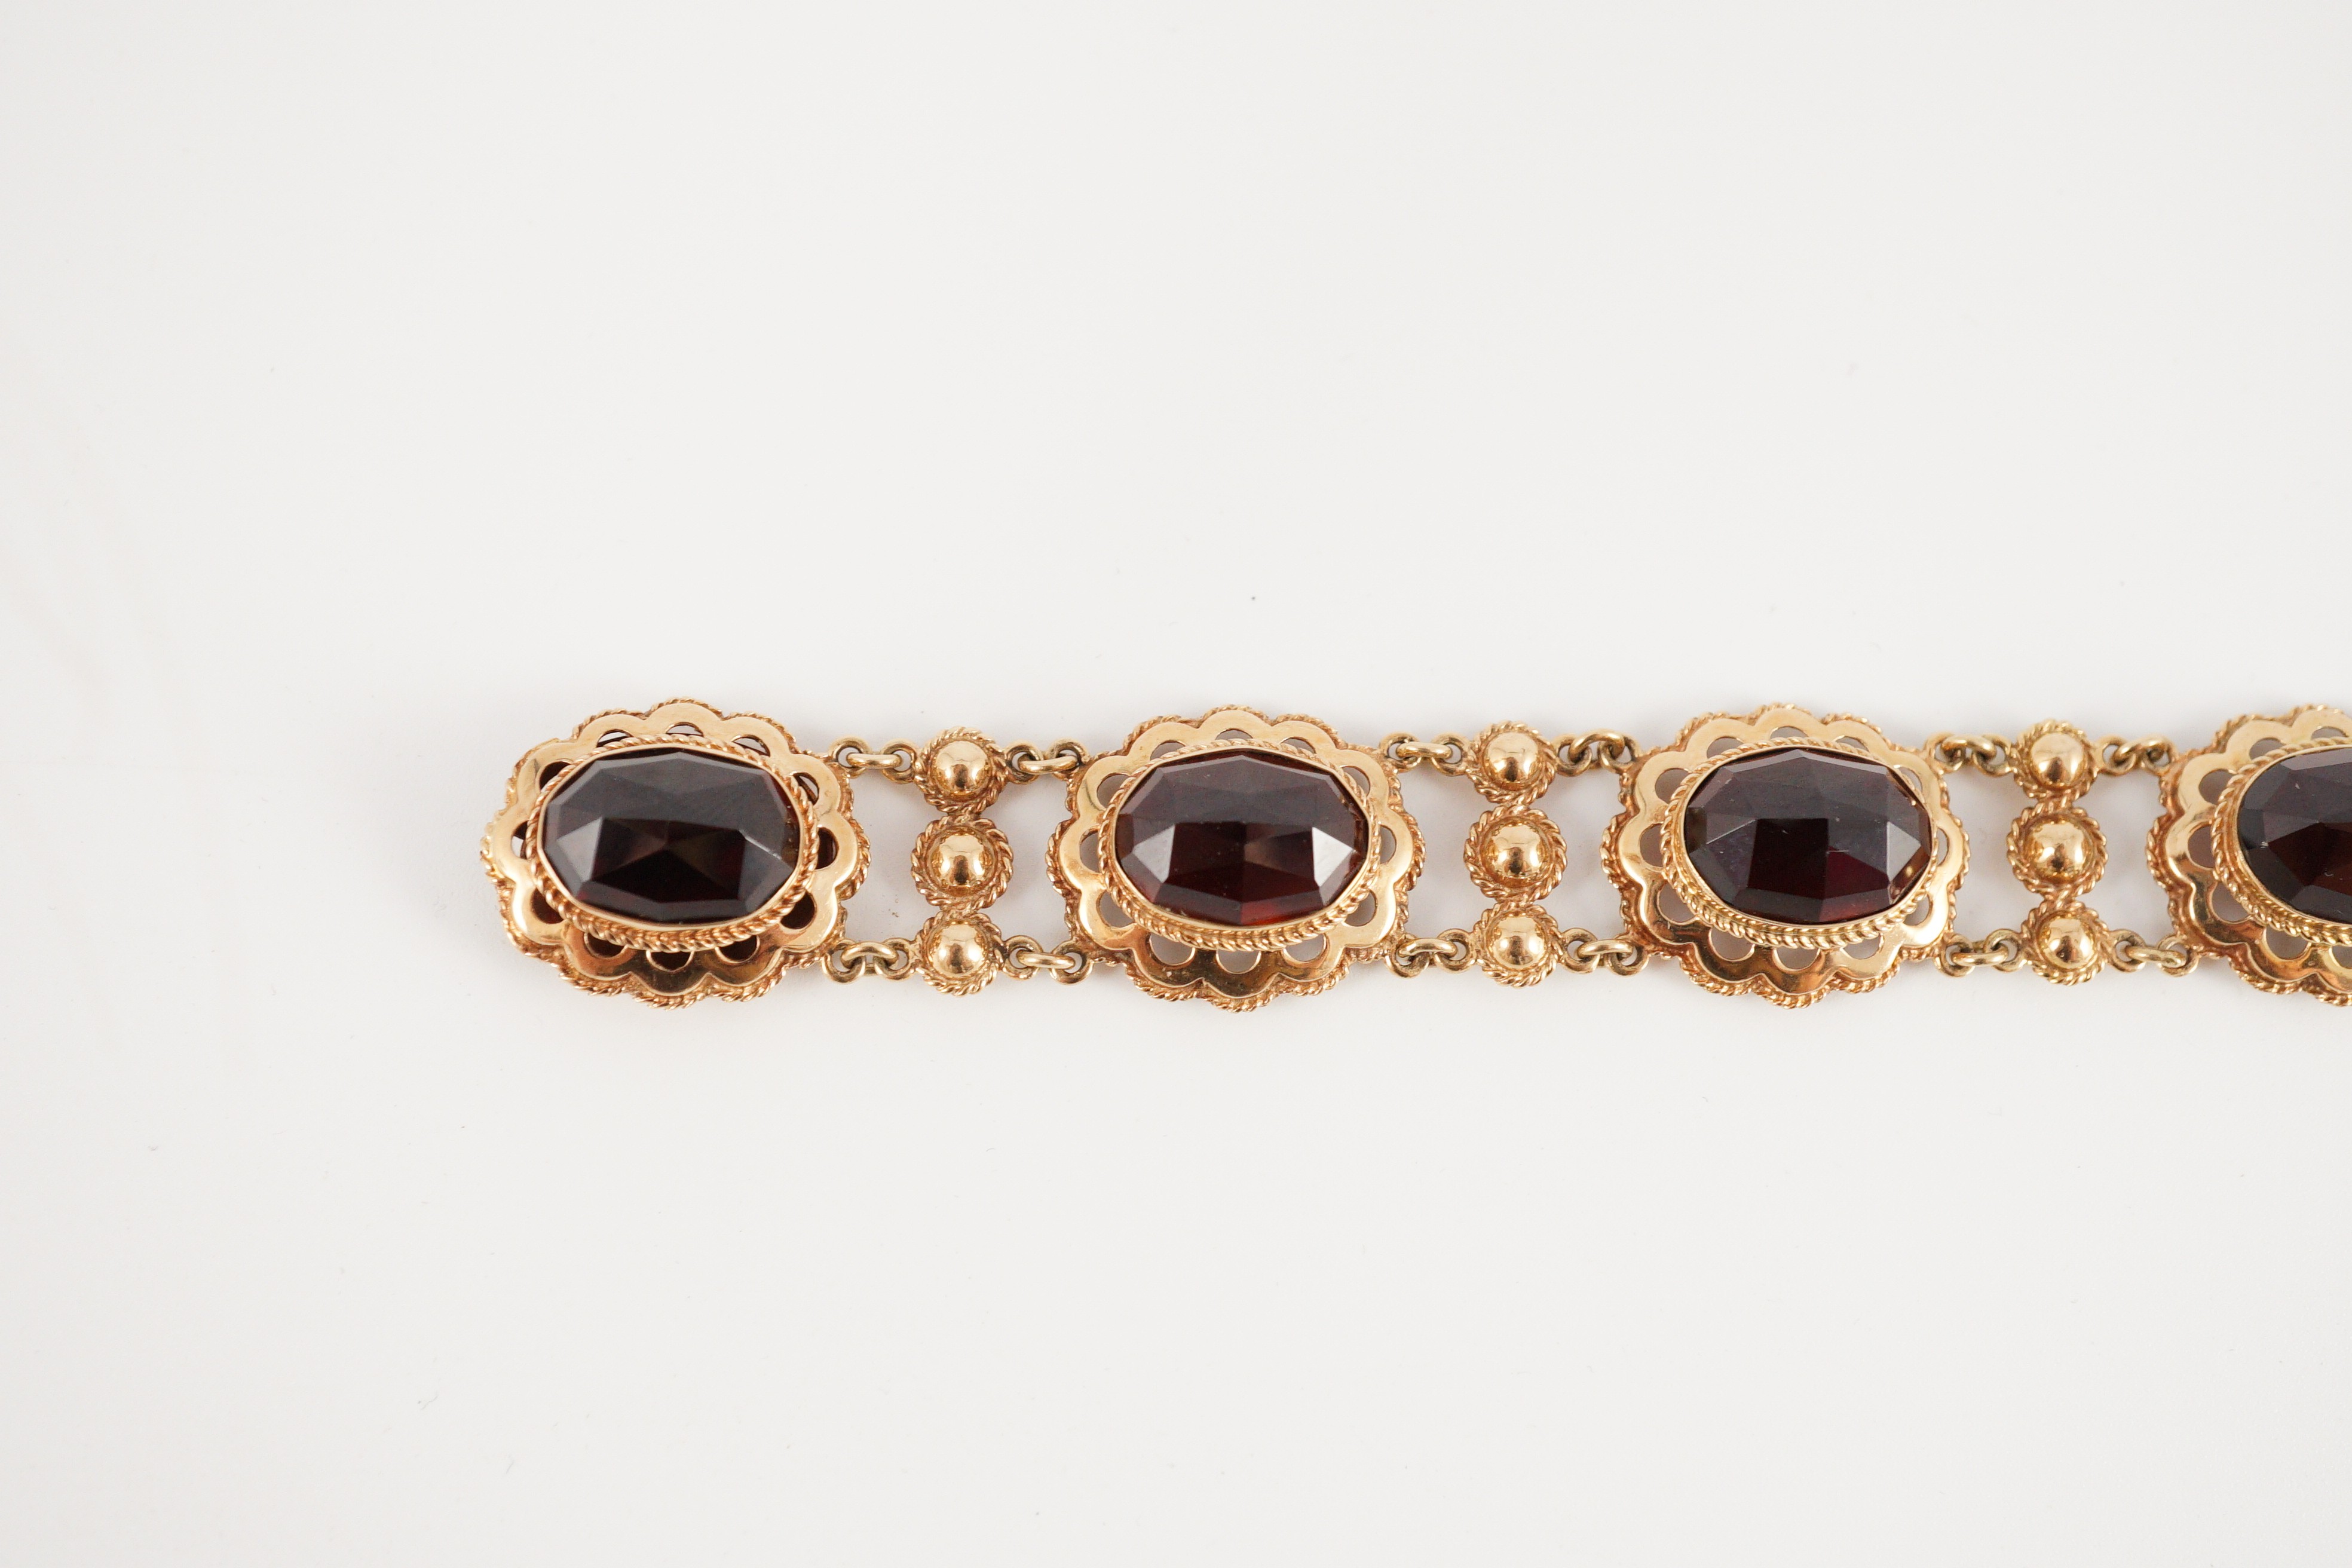 A 20th century Dutch 14k gold and six stone facet cut cabochon garnet set fancy link bracelet